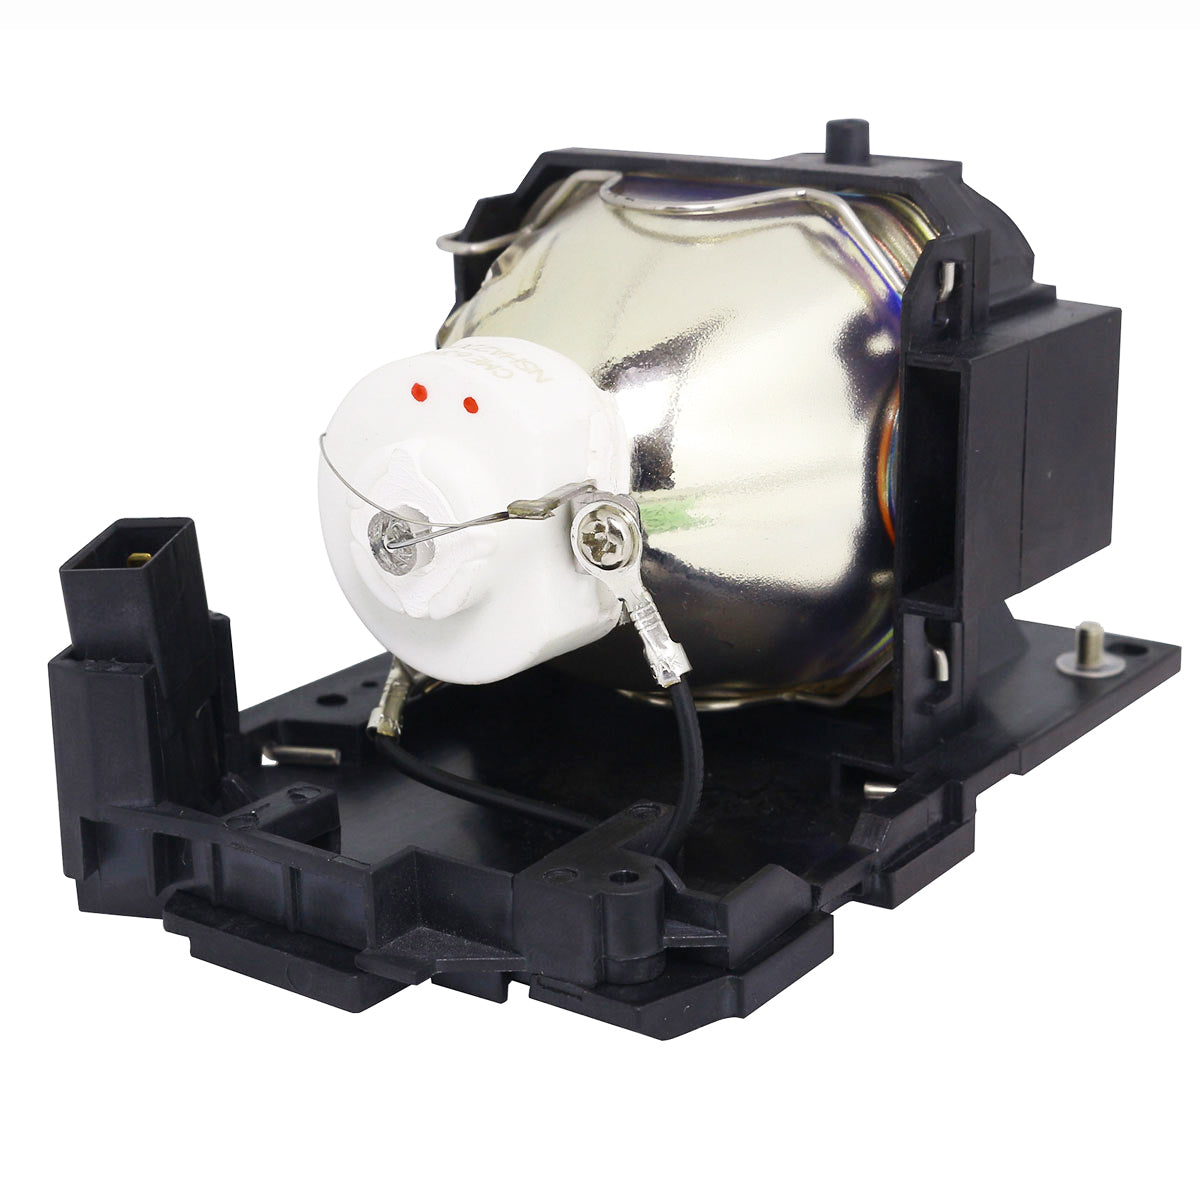 Dukane 456-8104 Ushio Projector Lamp Module